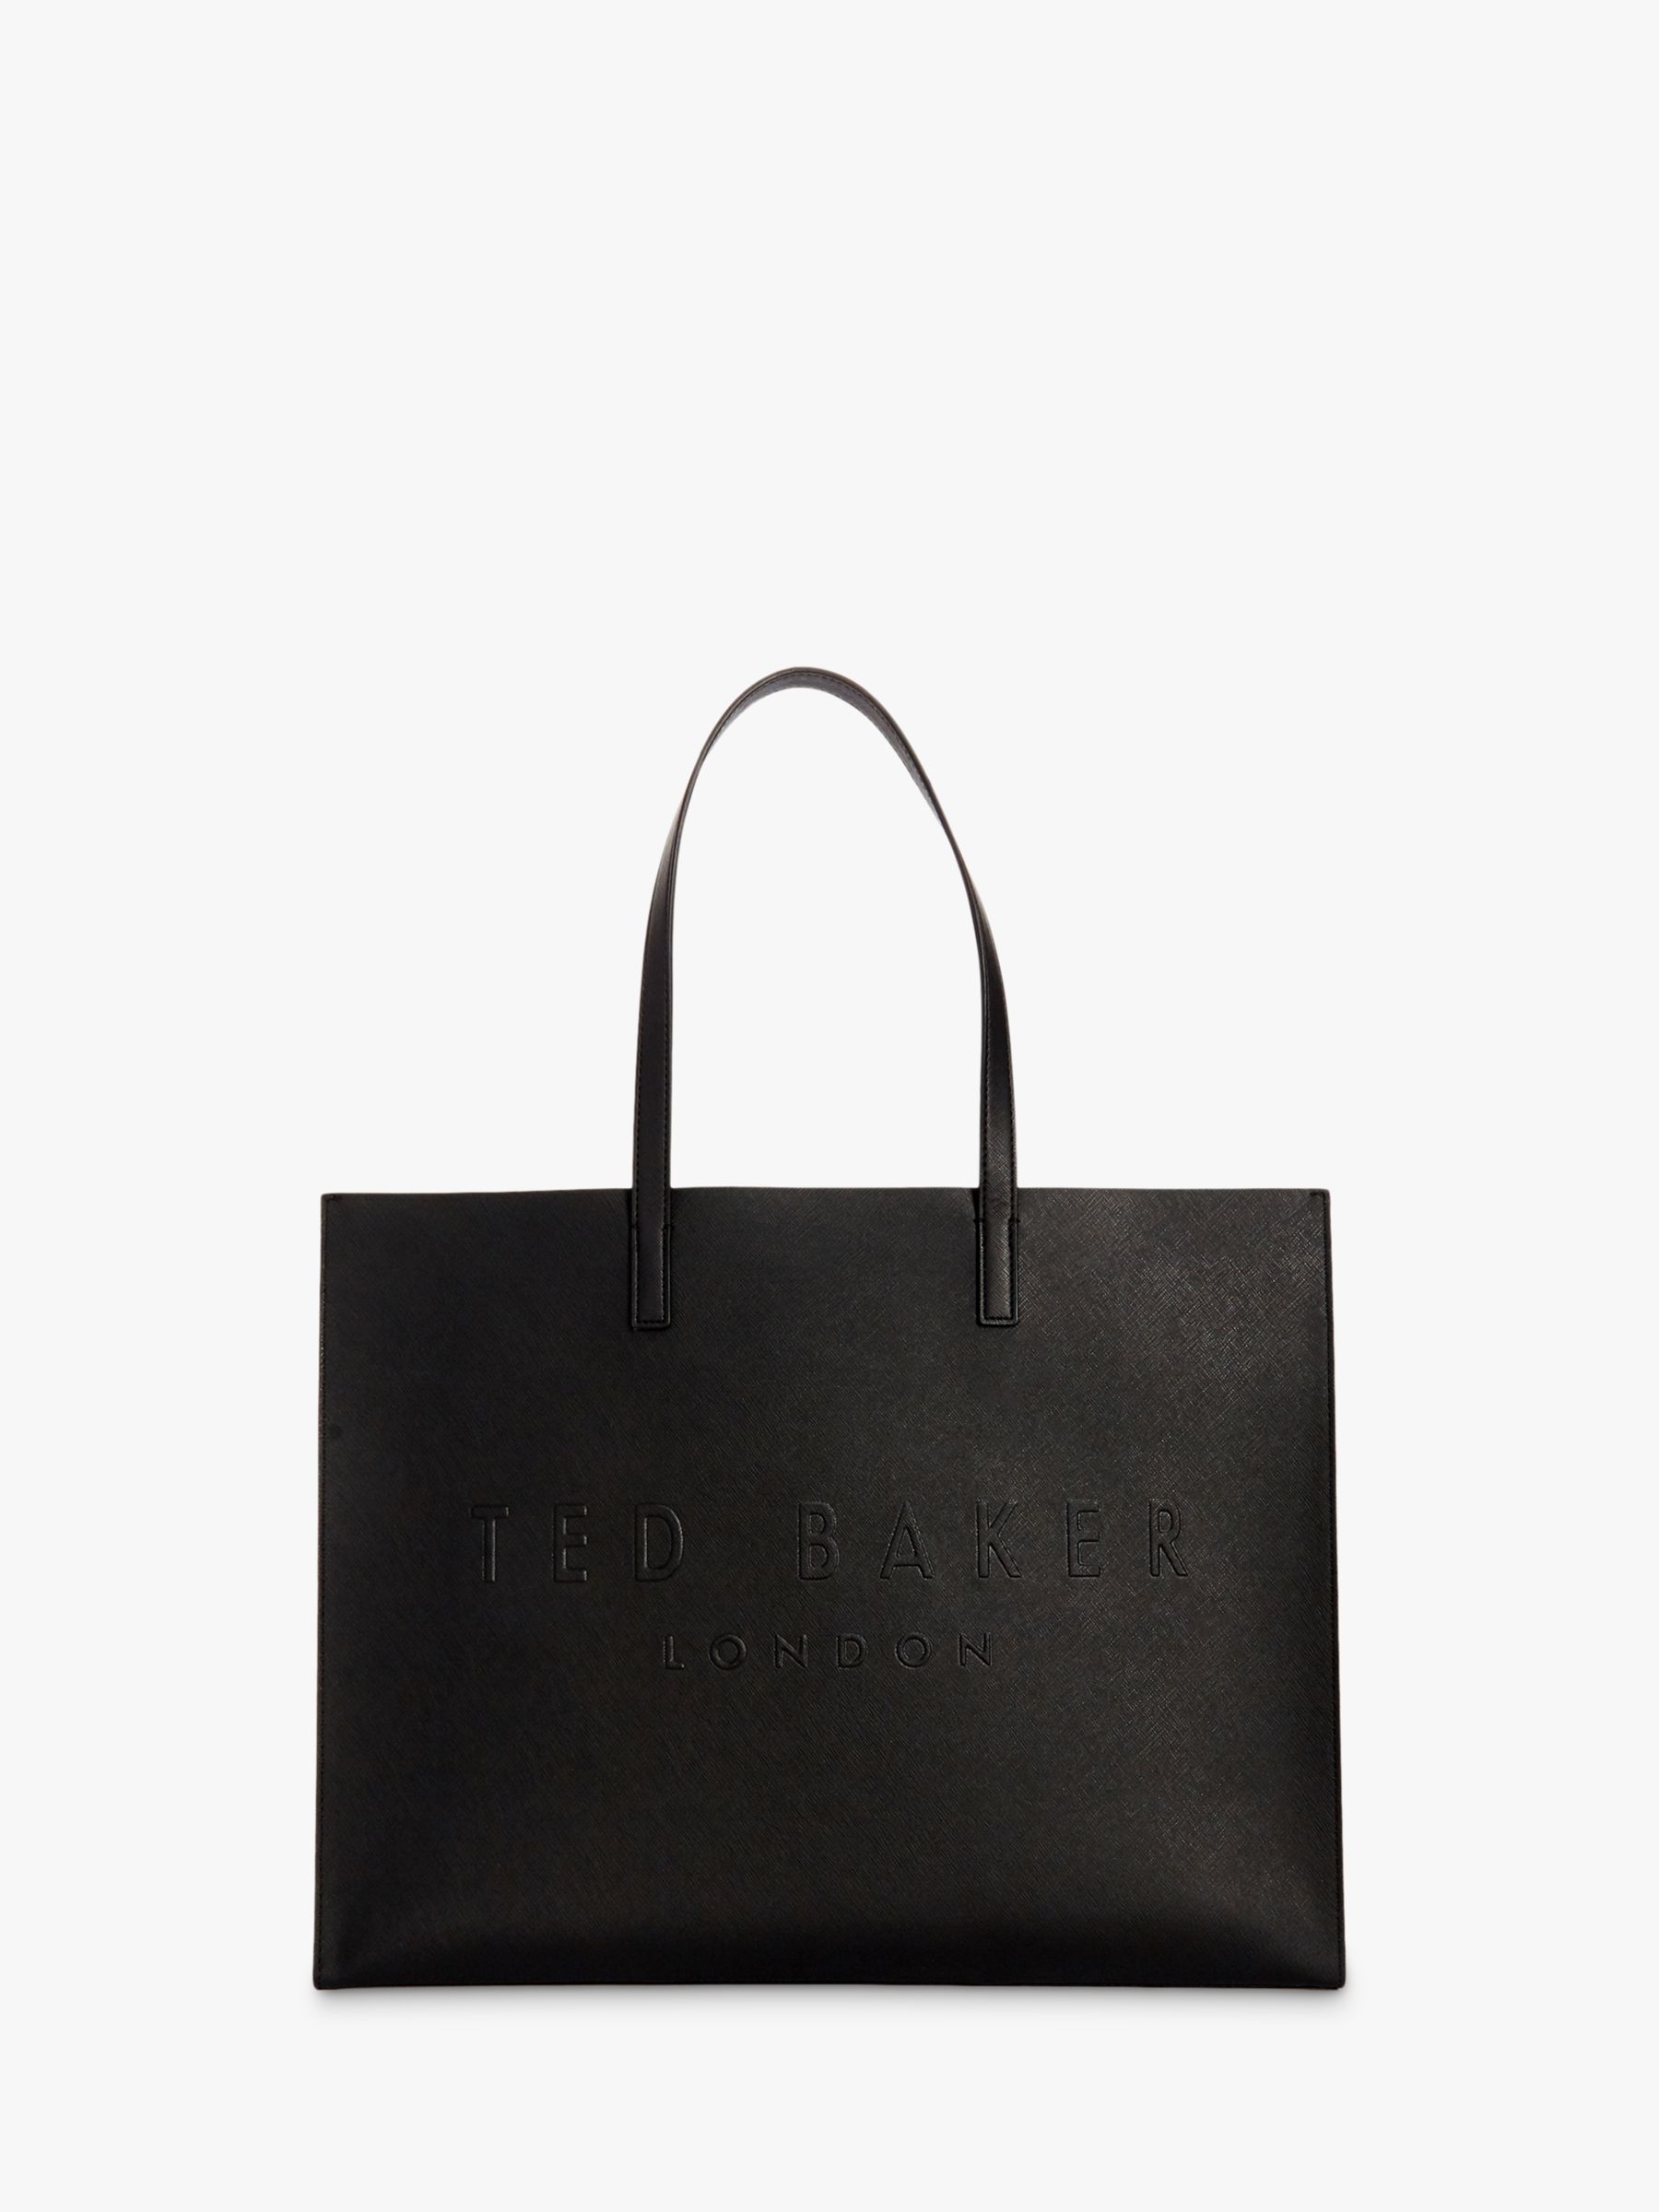 Ted Baker London Bags & Handbags for Women for sale